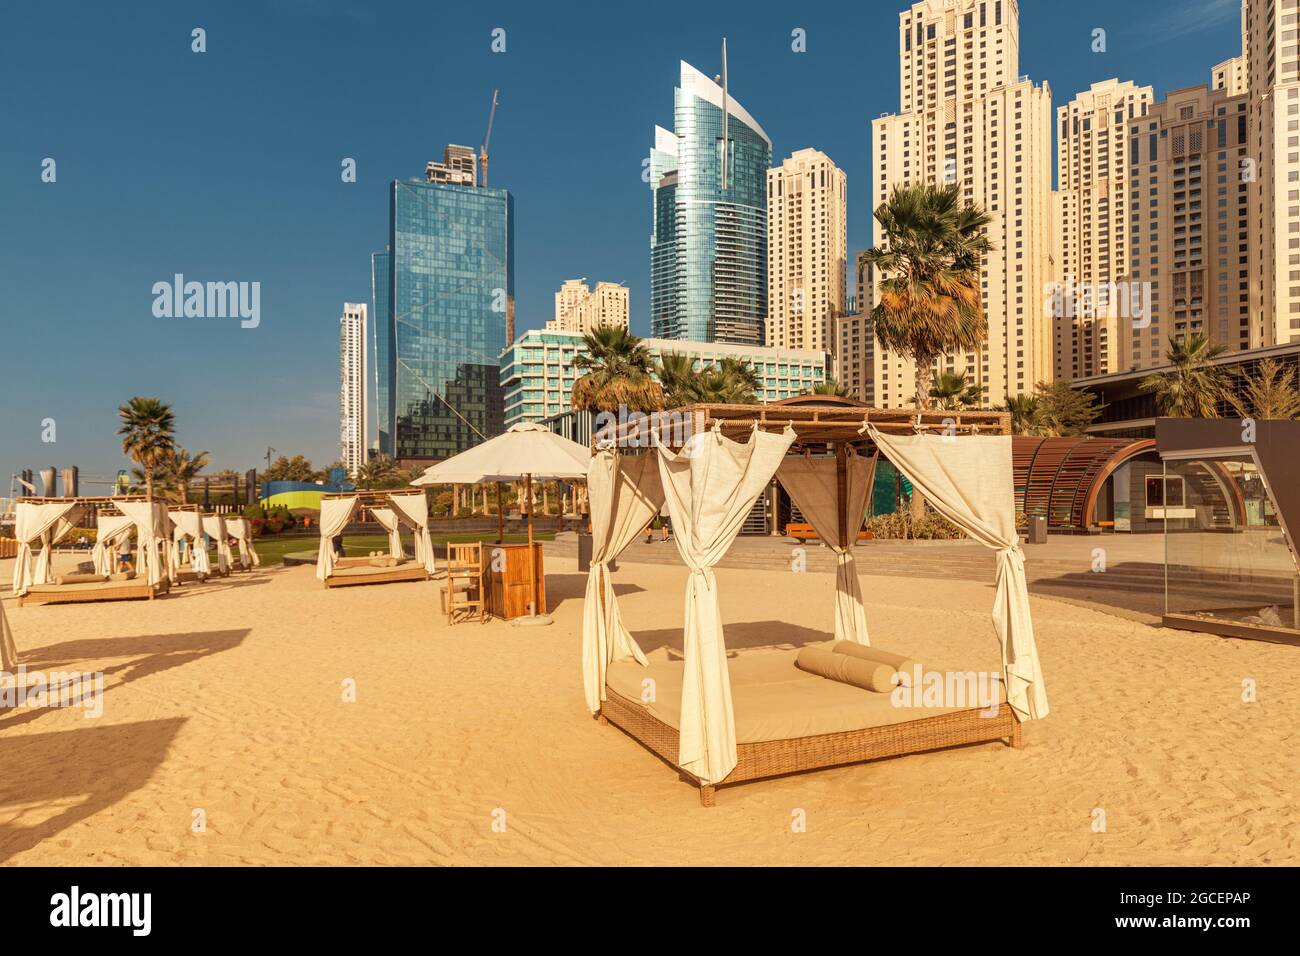 Baldacchino con tende e lettini prendisole in attesa di turisti in Dubai Jumeirah Beach resort. Concetto di vacanza di lusso Foto Stock